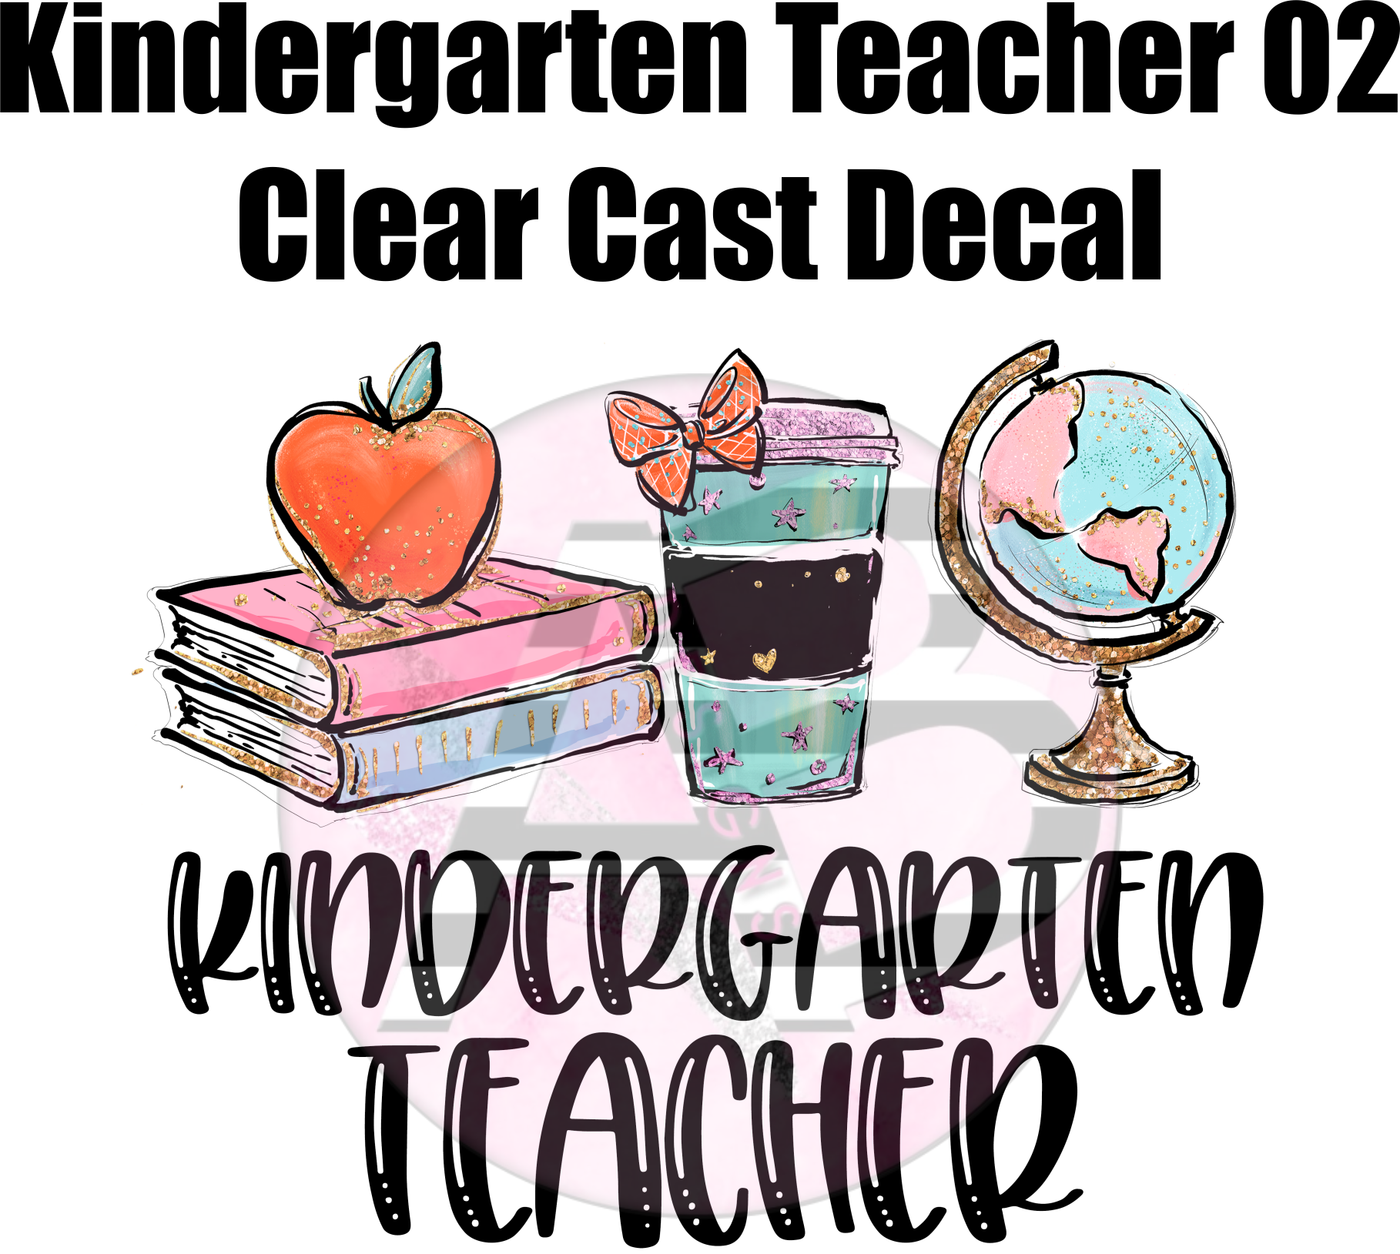 Kindergarten Teacher 02 - Clear Cast Decal